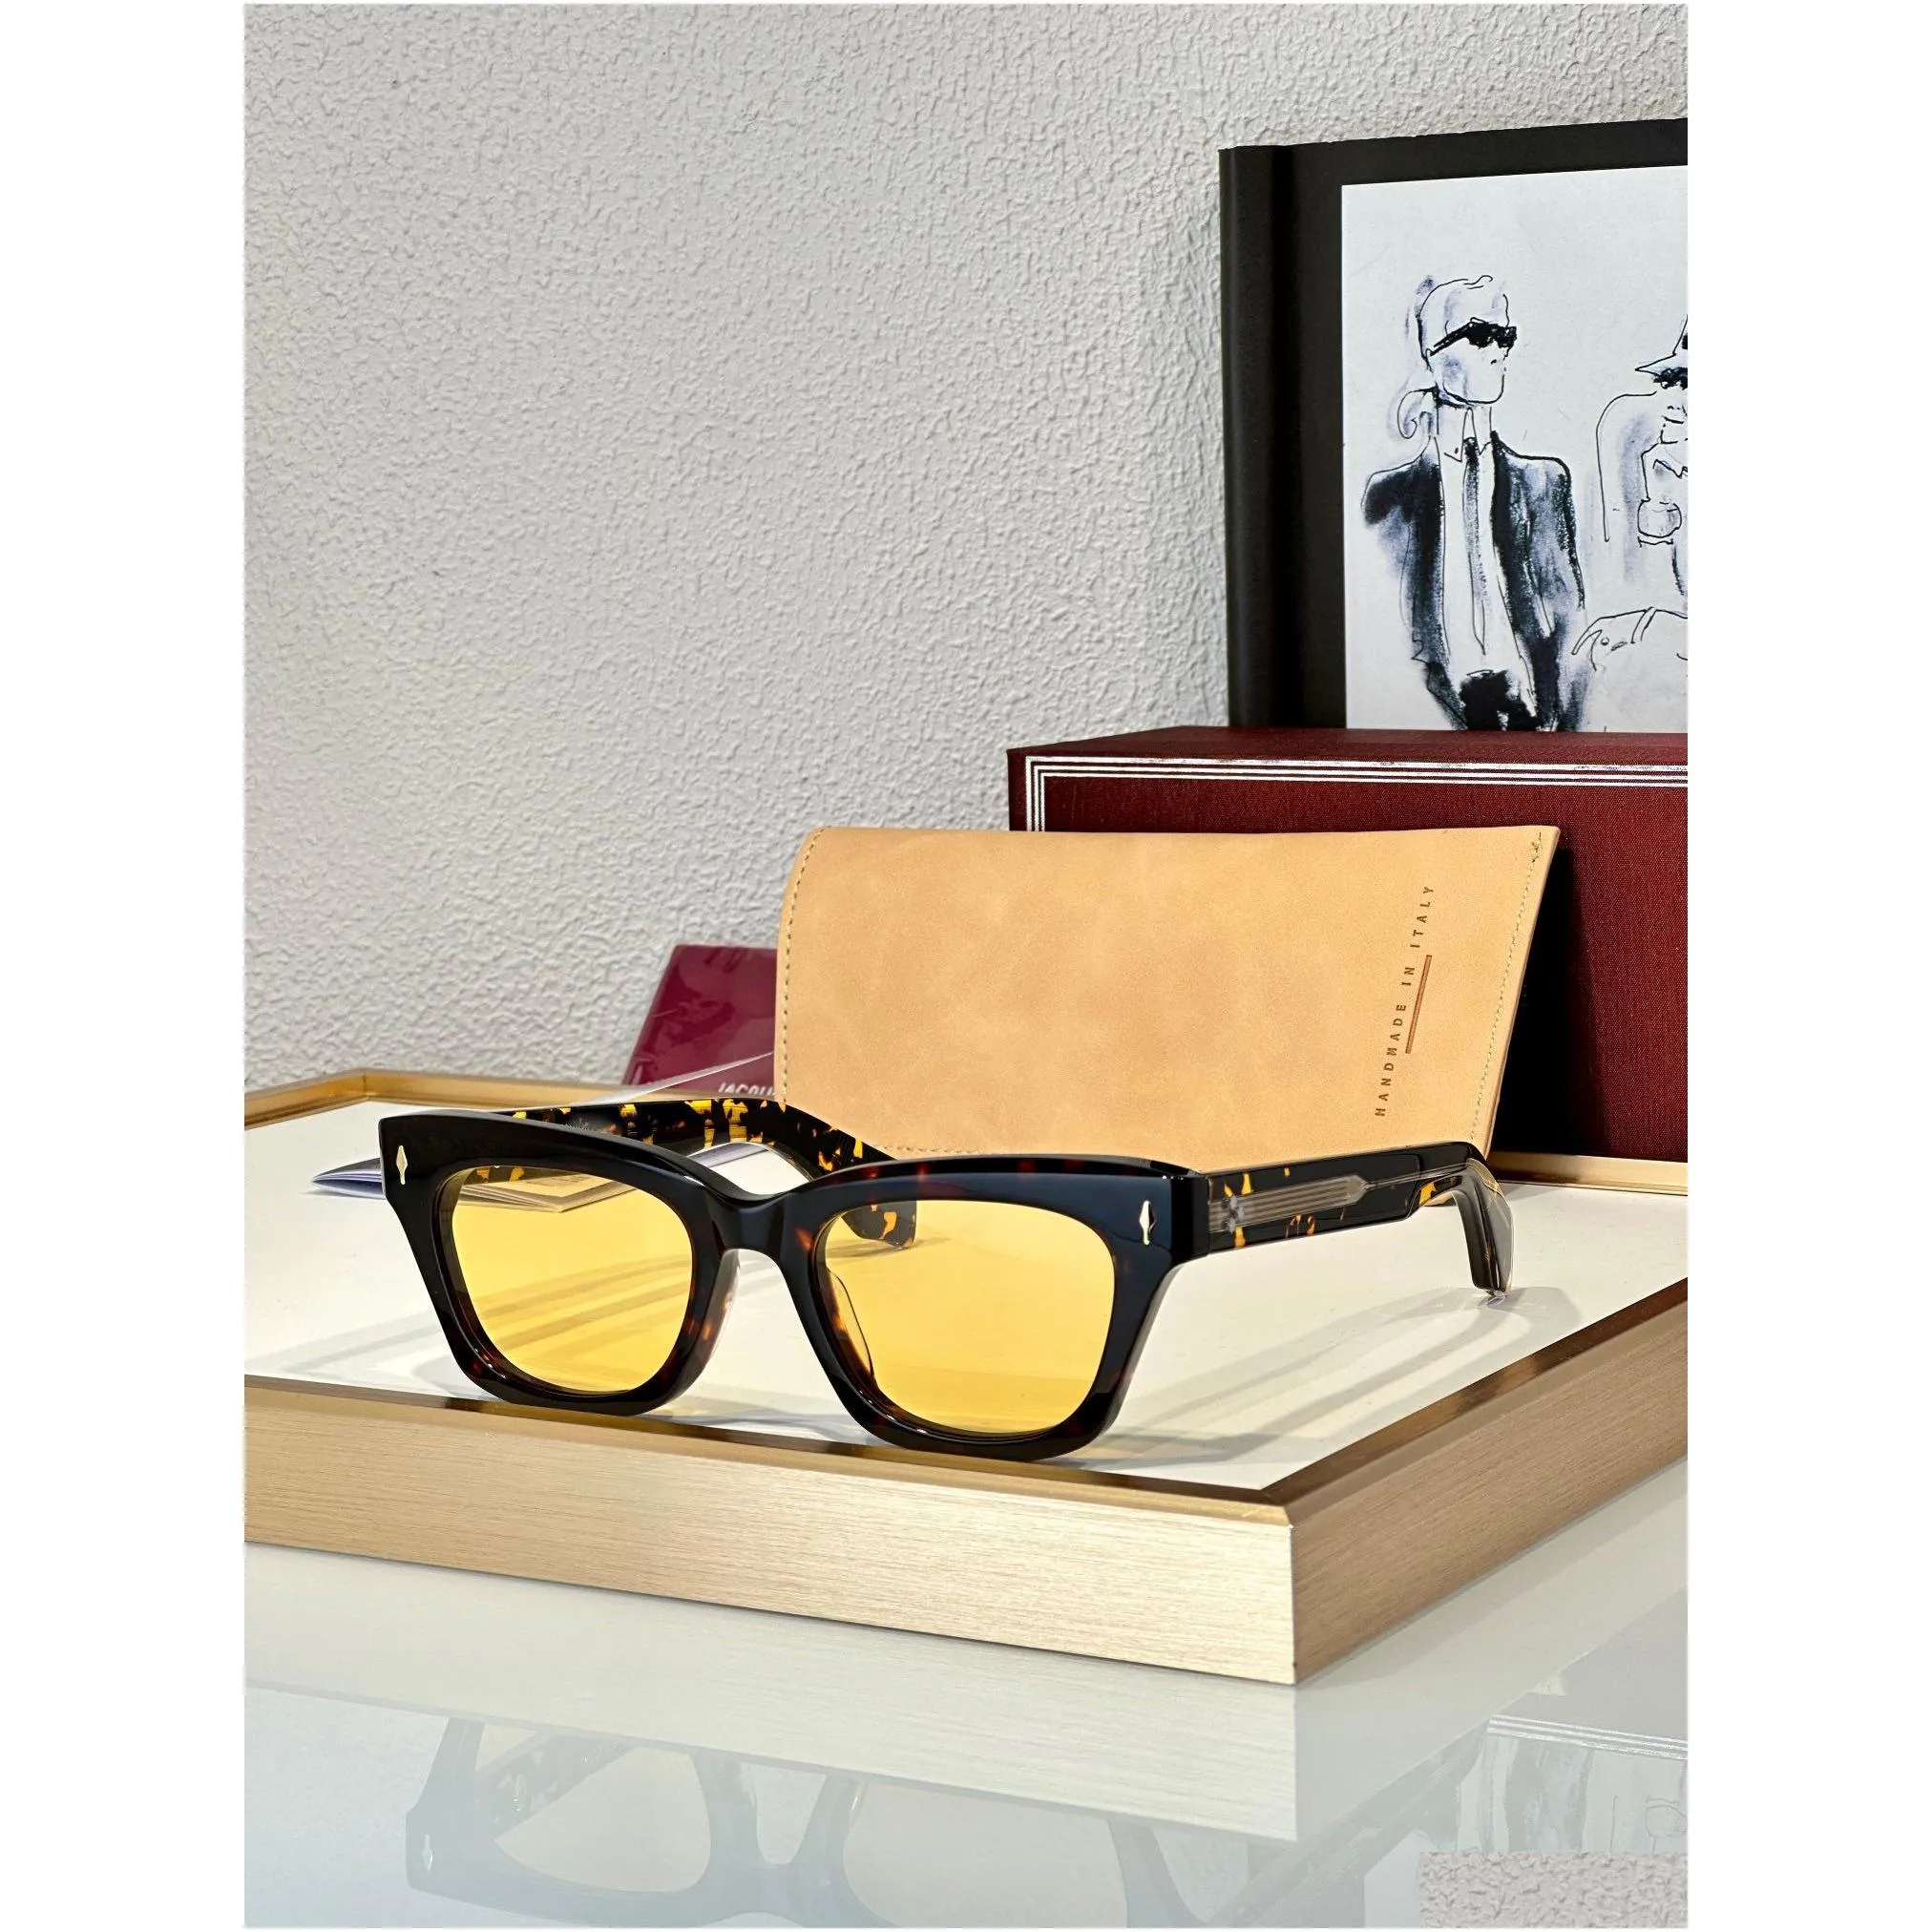 famous dealan designers sunglasses for men women cat eye sunglasses oem  frames luxury brand acetate eyewear retro uv400 protective lens handmade sun